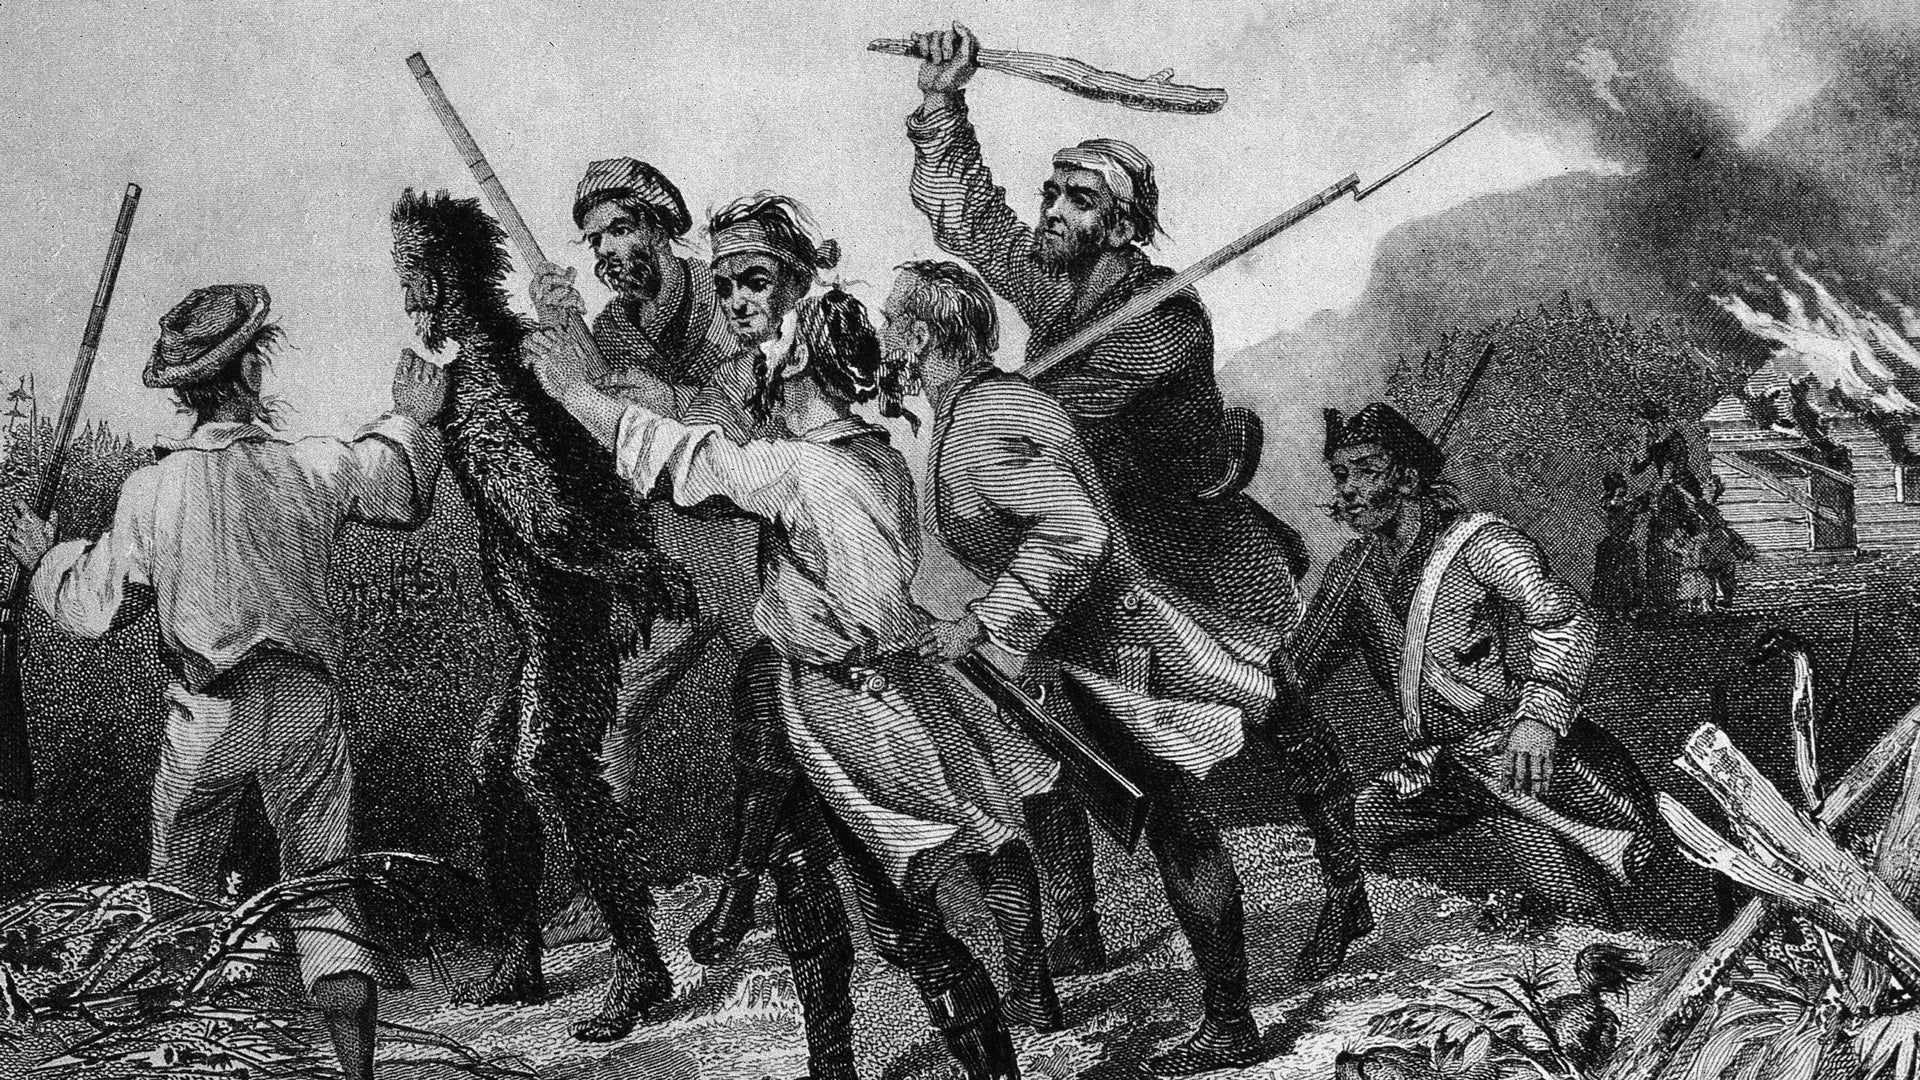 A Rebelião do Whiskey de 1794: O primeiro imposto governamental sobre uma nova nação